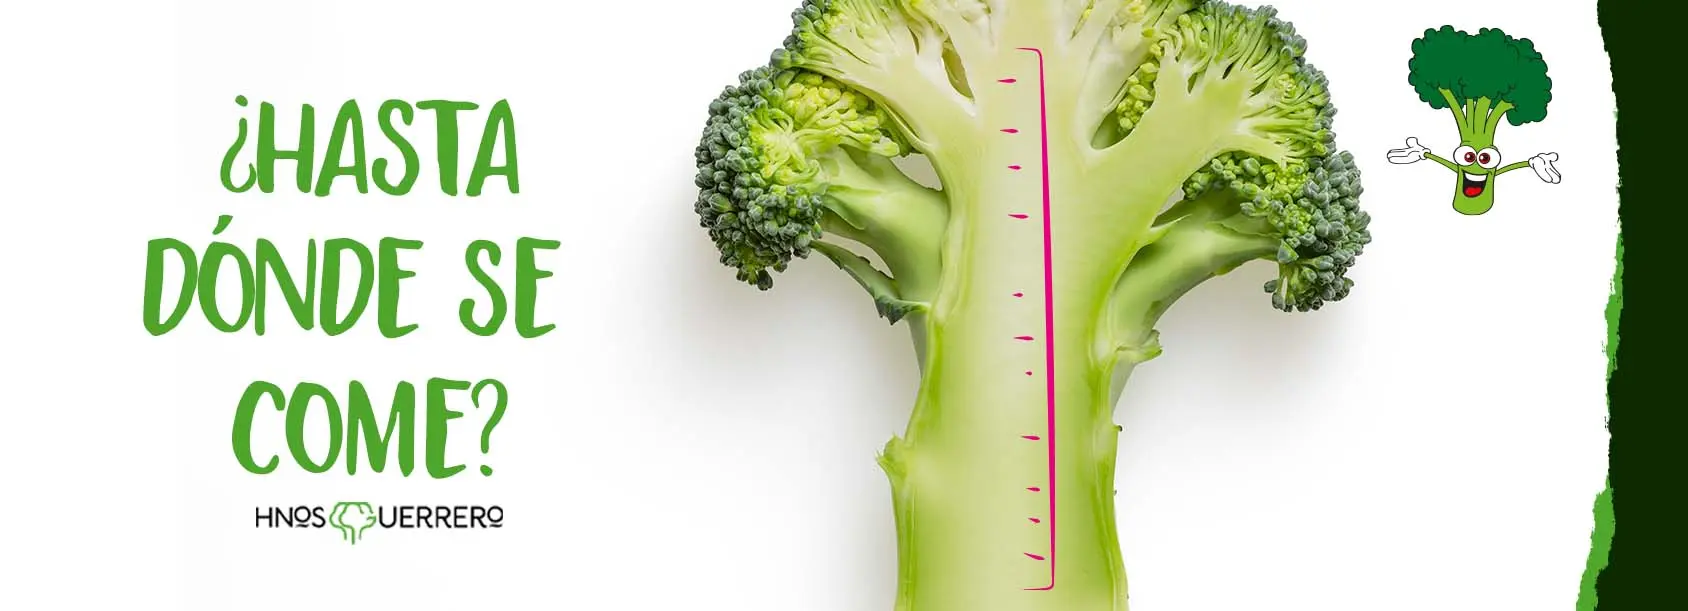 flor de brocoli comestible - Qué es lo que se come del brócoli